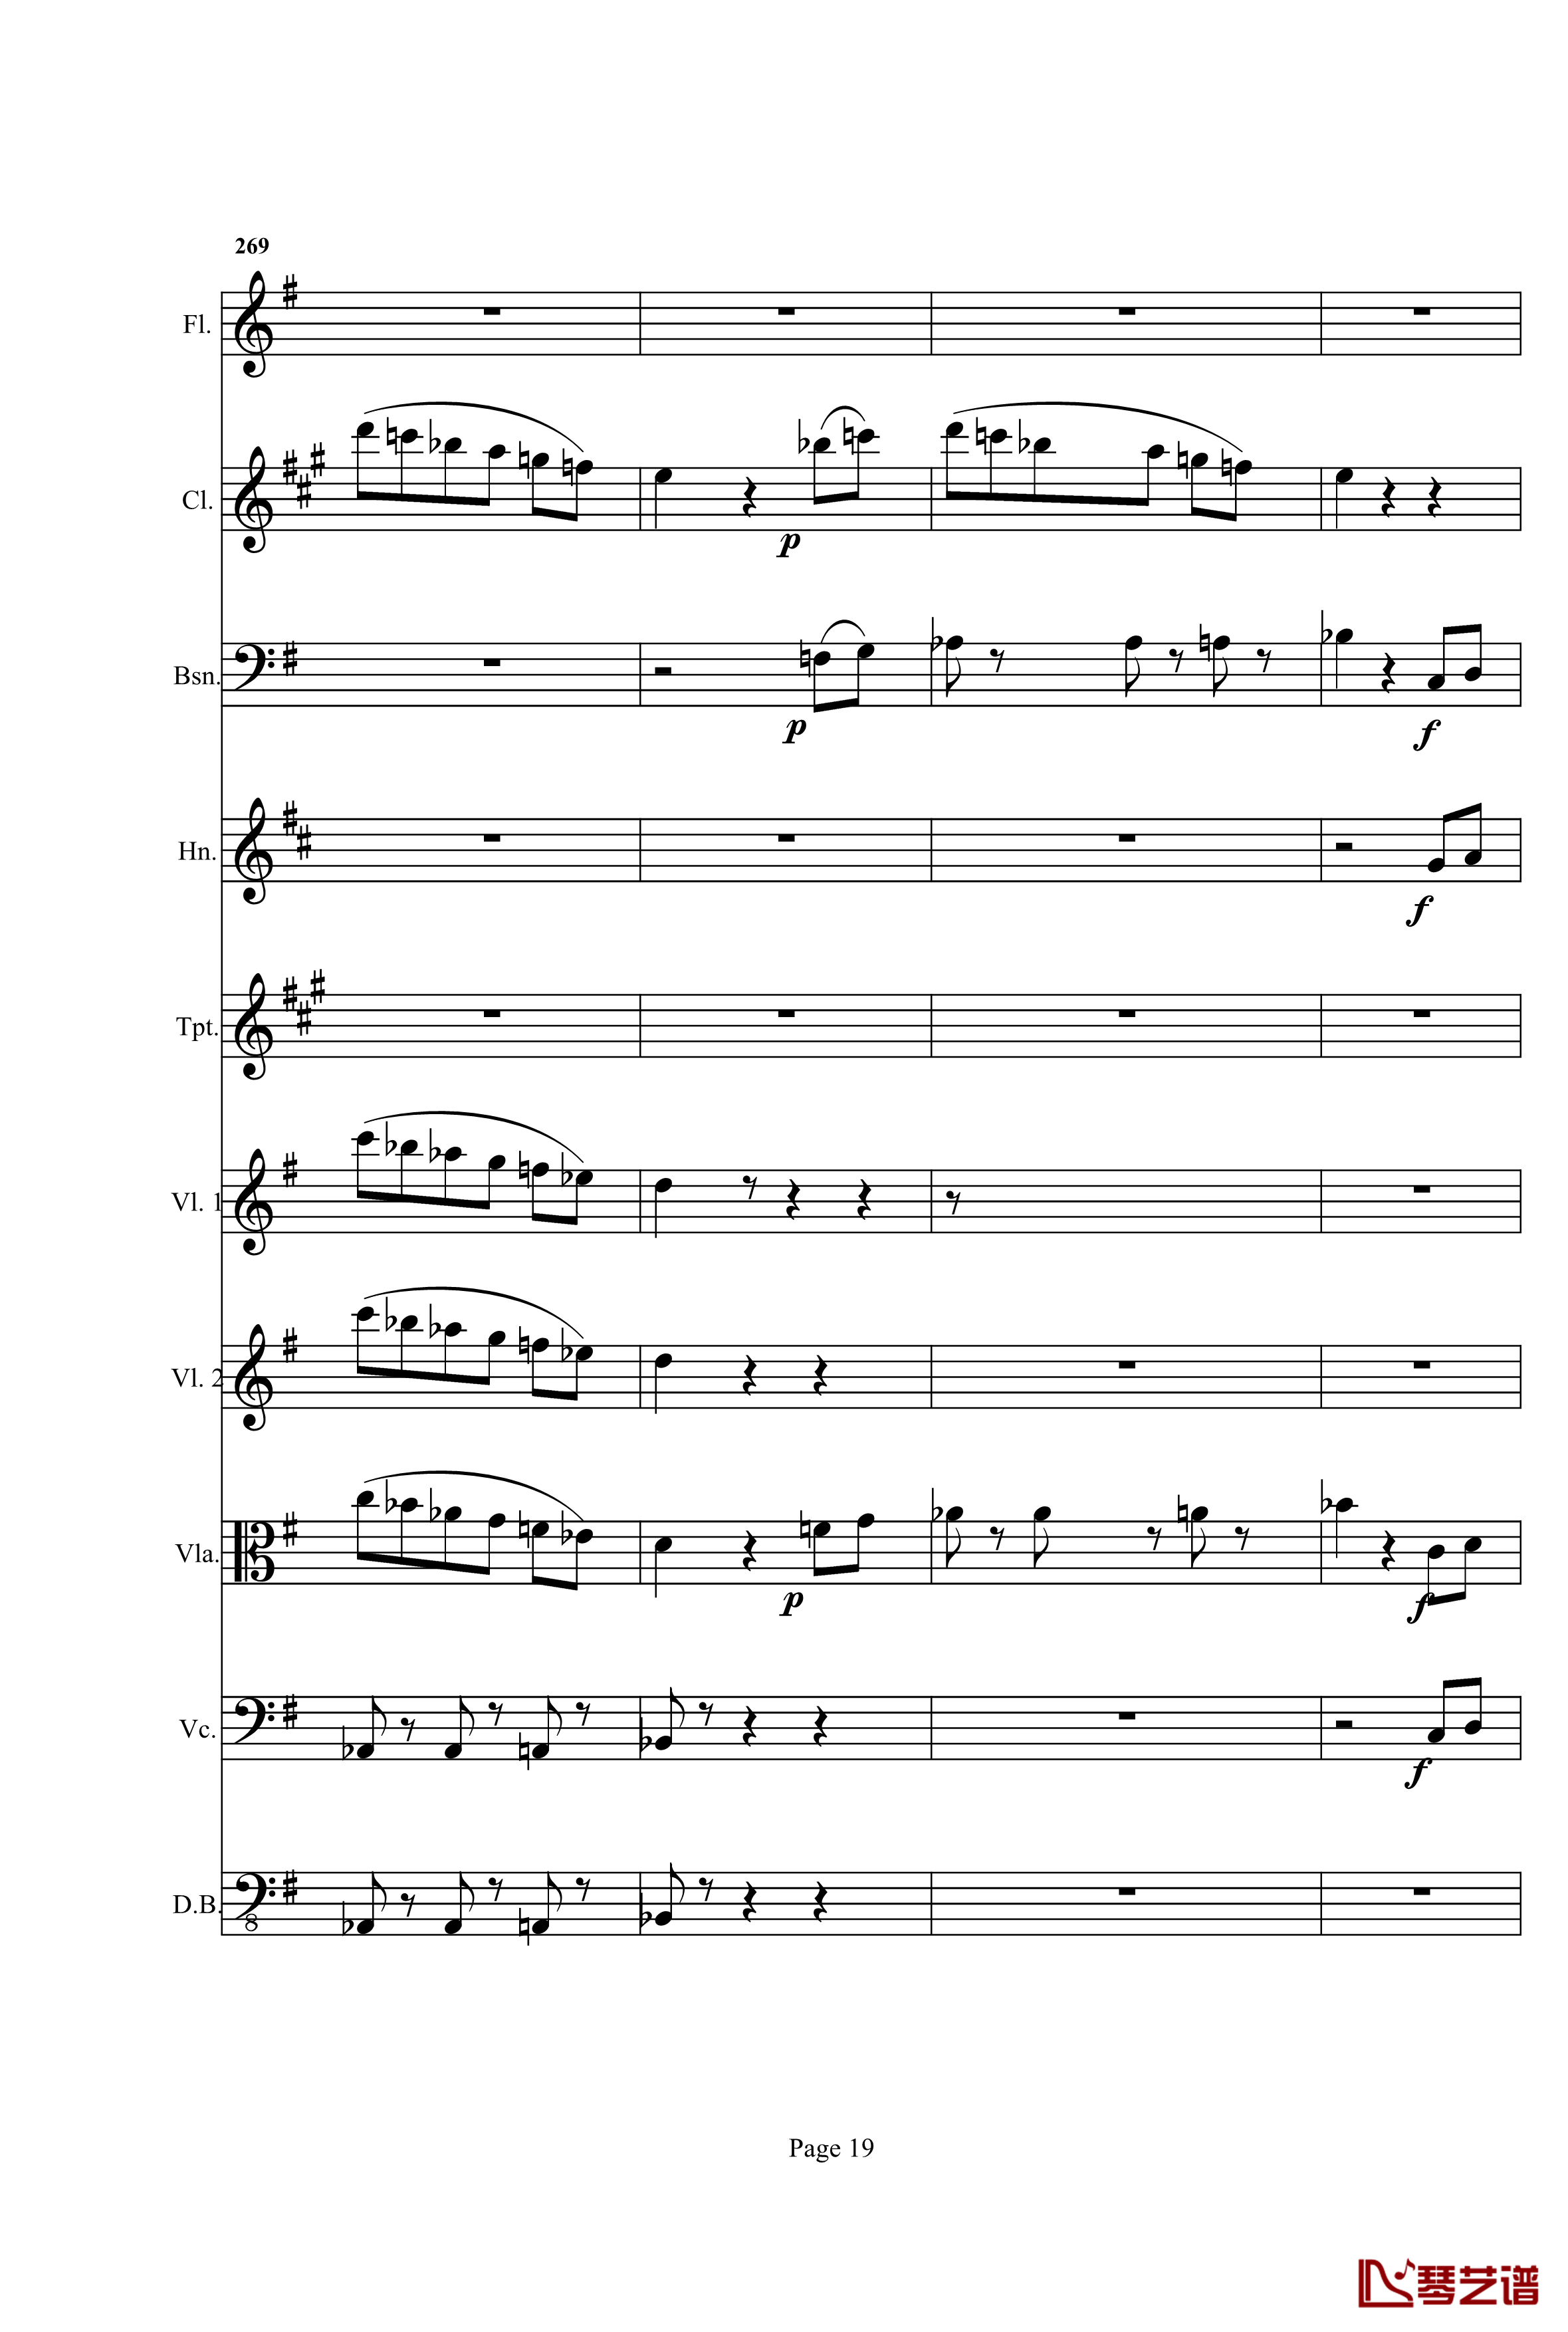 奏鸣曲之交响钢琴谱-第25首-Ⅰ-贝多芬-beethoven19